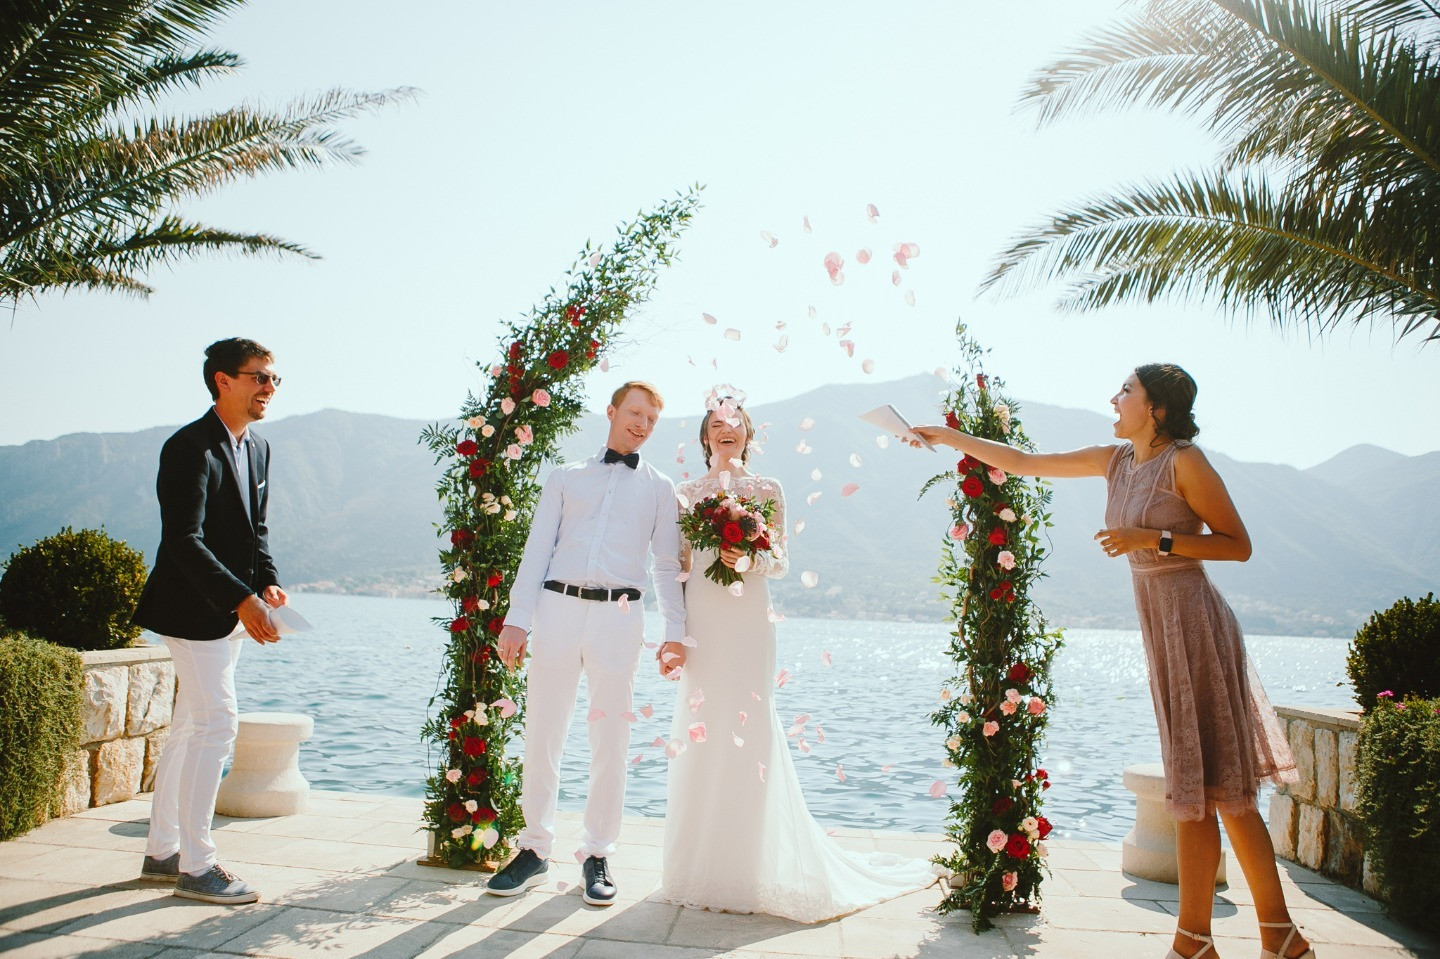 ФОТО ИЗ СТАТЬИ: Ягодные оттенки: интернациональная свадьба в Черногории